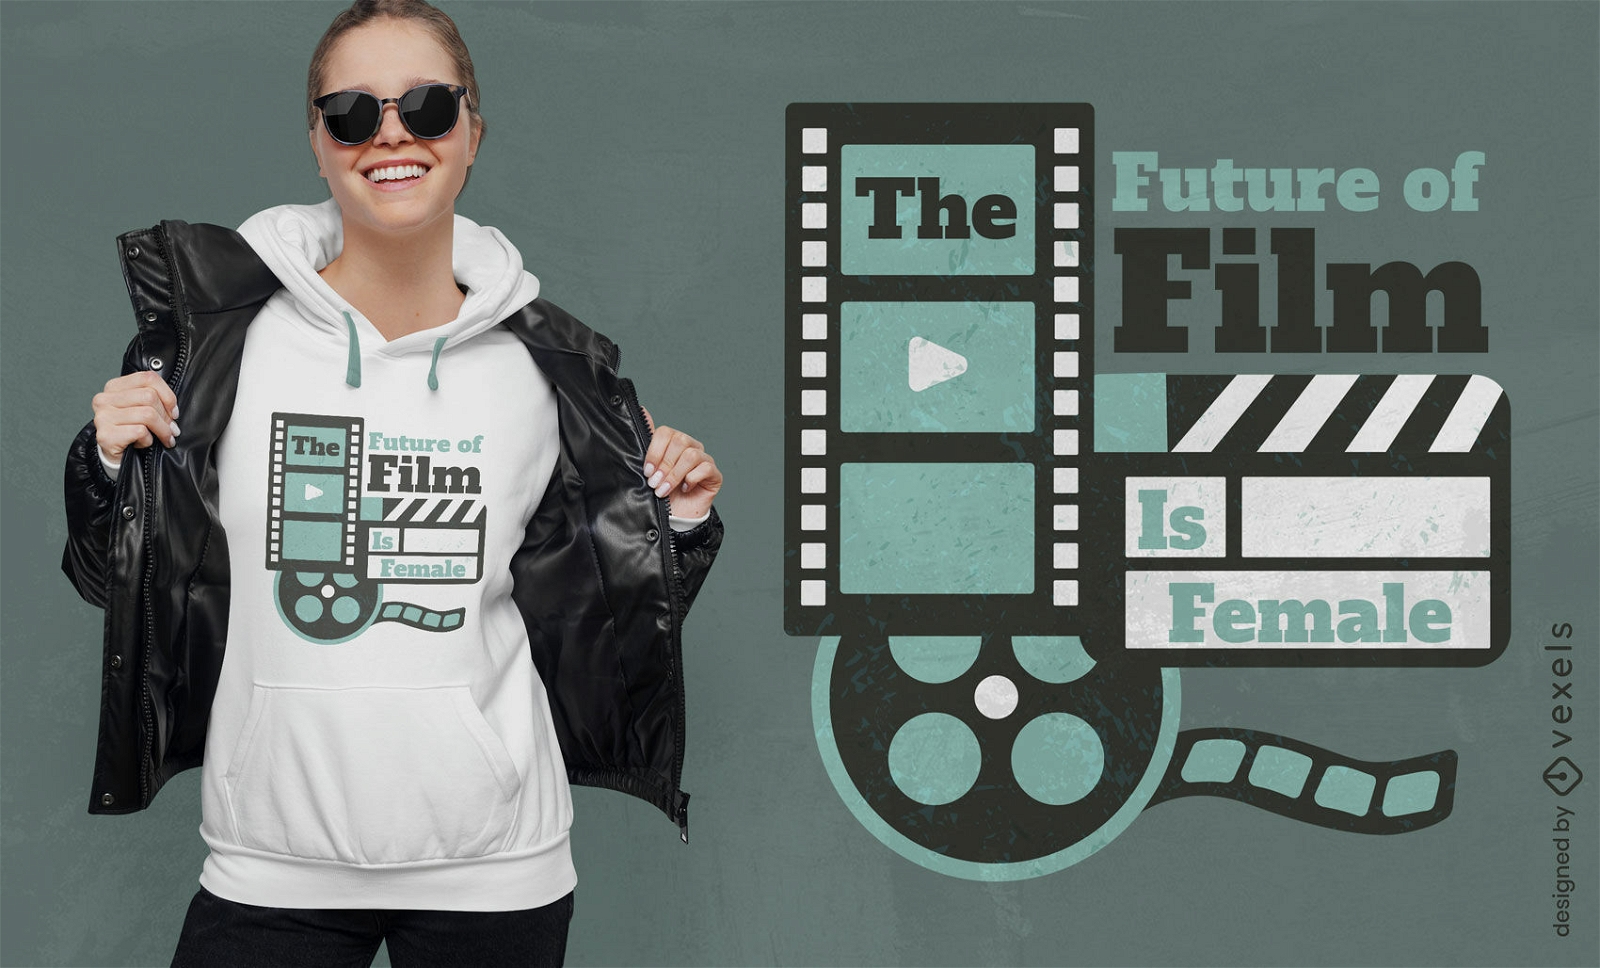 El futuro del cine es el dise?o de camisetas con citas femeninas.